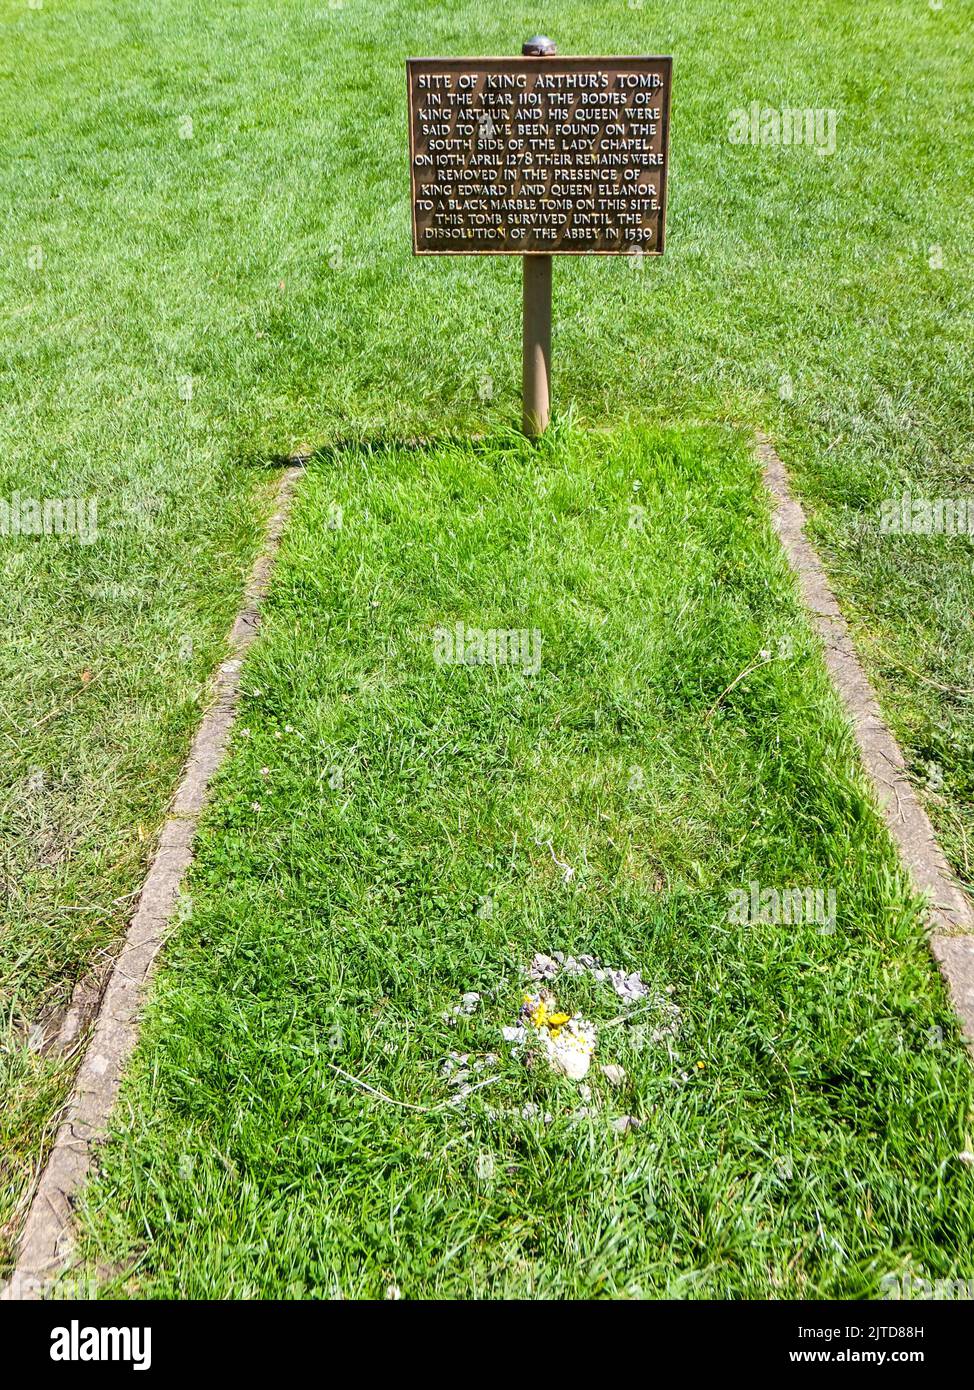 Un panneau dans l'herbe verte marque le site de la tombe du roi Arthur de 1278 à 1539 à Glastonbury, Somerset, Angleterre, Royaume-Uni. Banque D'Images